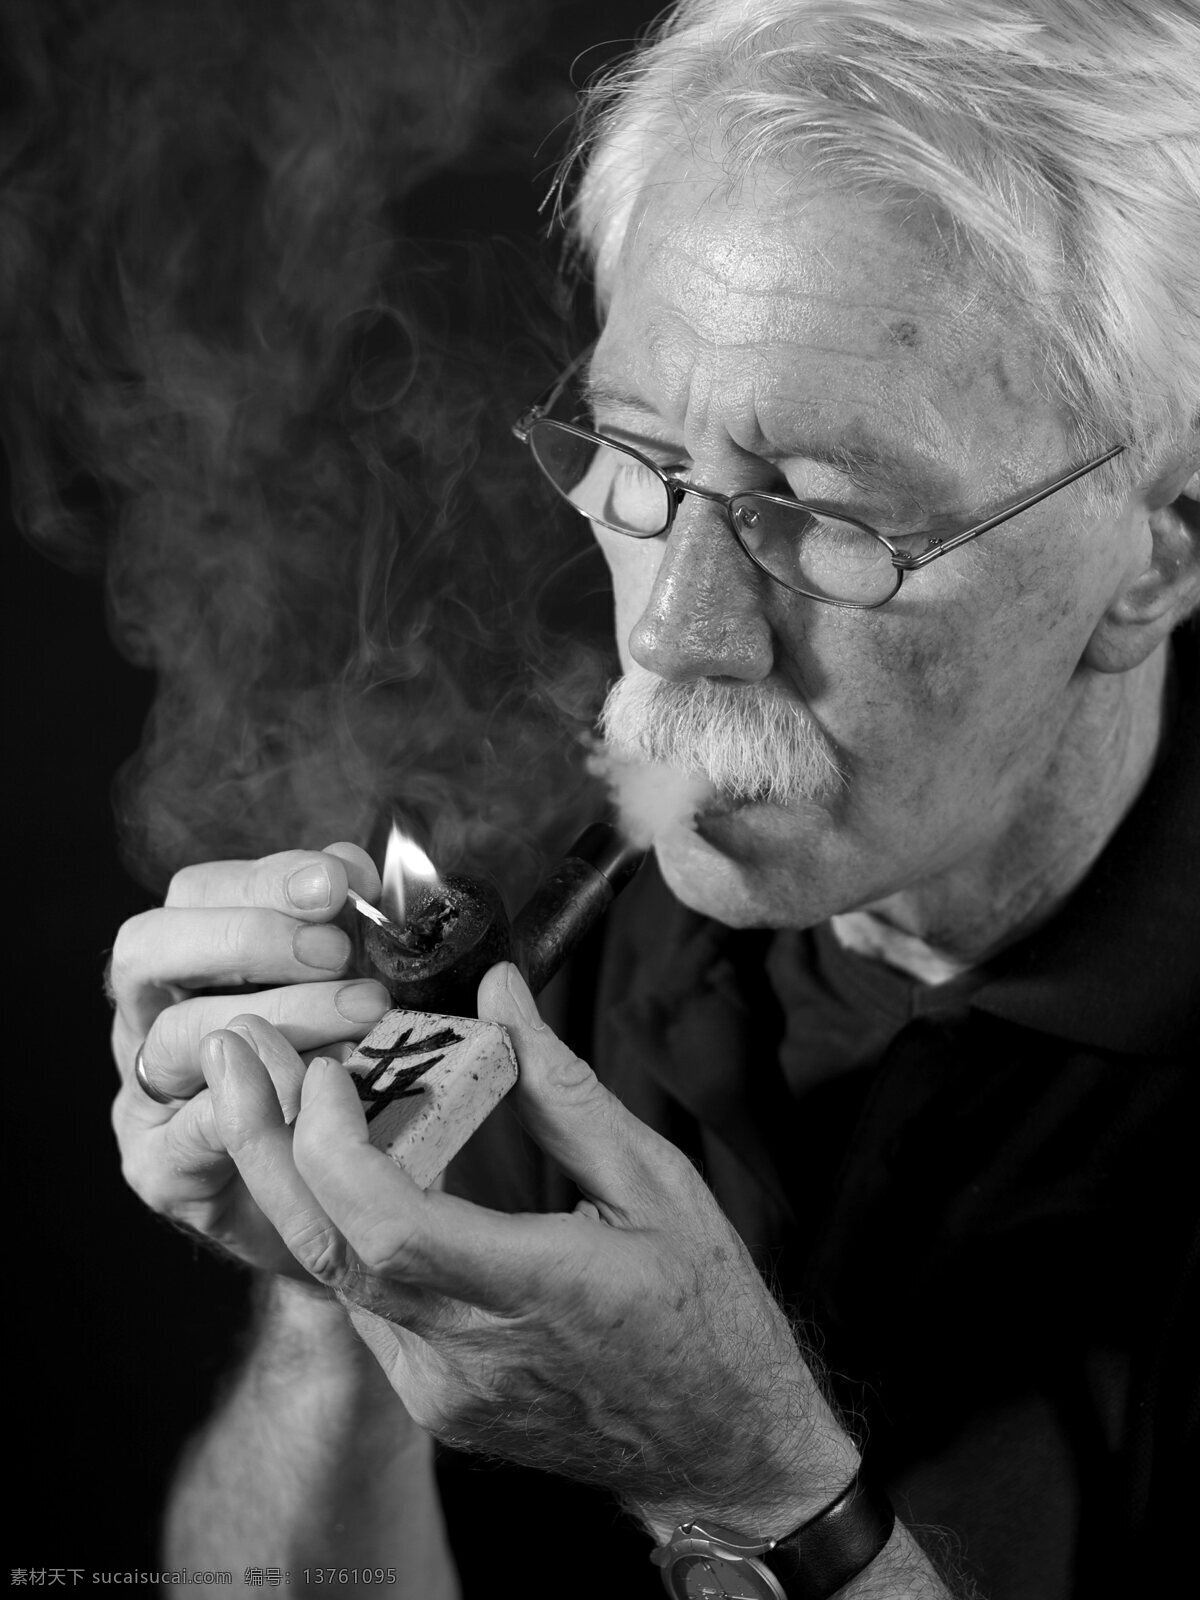 老人 吸烟 烟斗 眼镜 火 男性 欧美 人物 人物摄影 人物图库